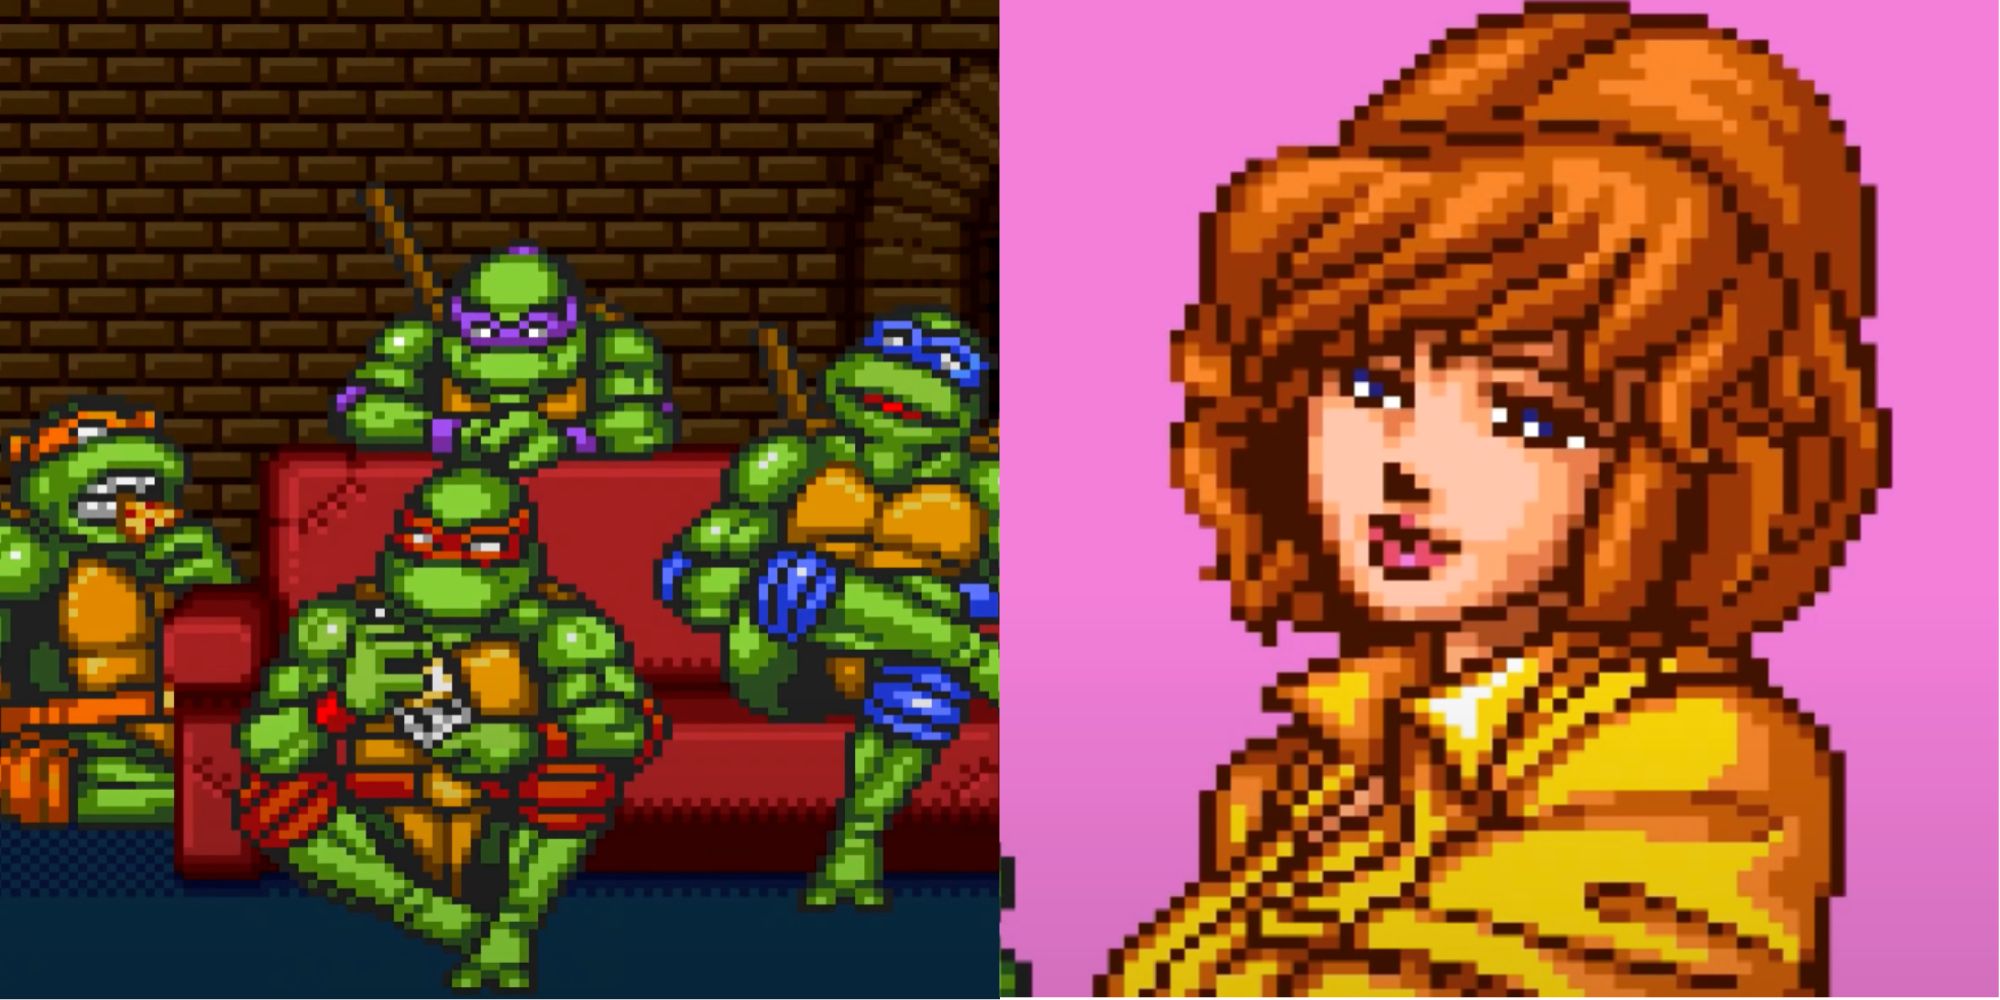 teenage mutant ninja turtles 2022 leonardo and karai